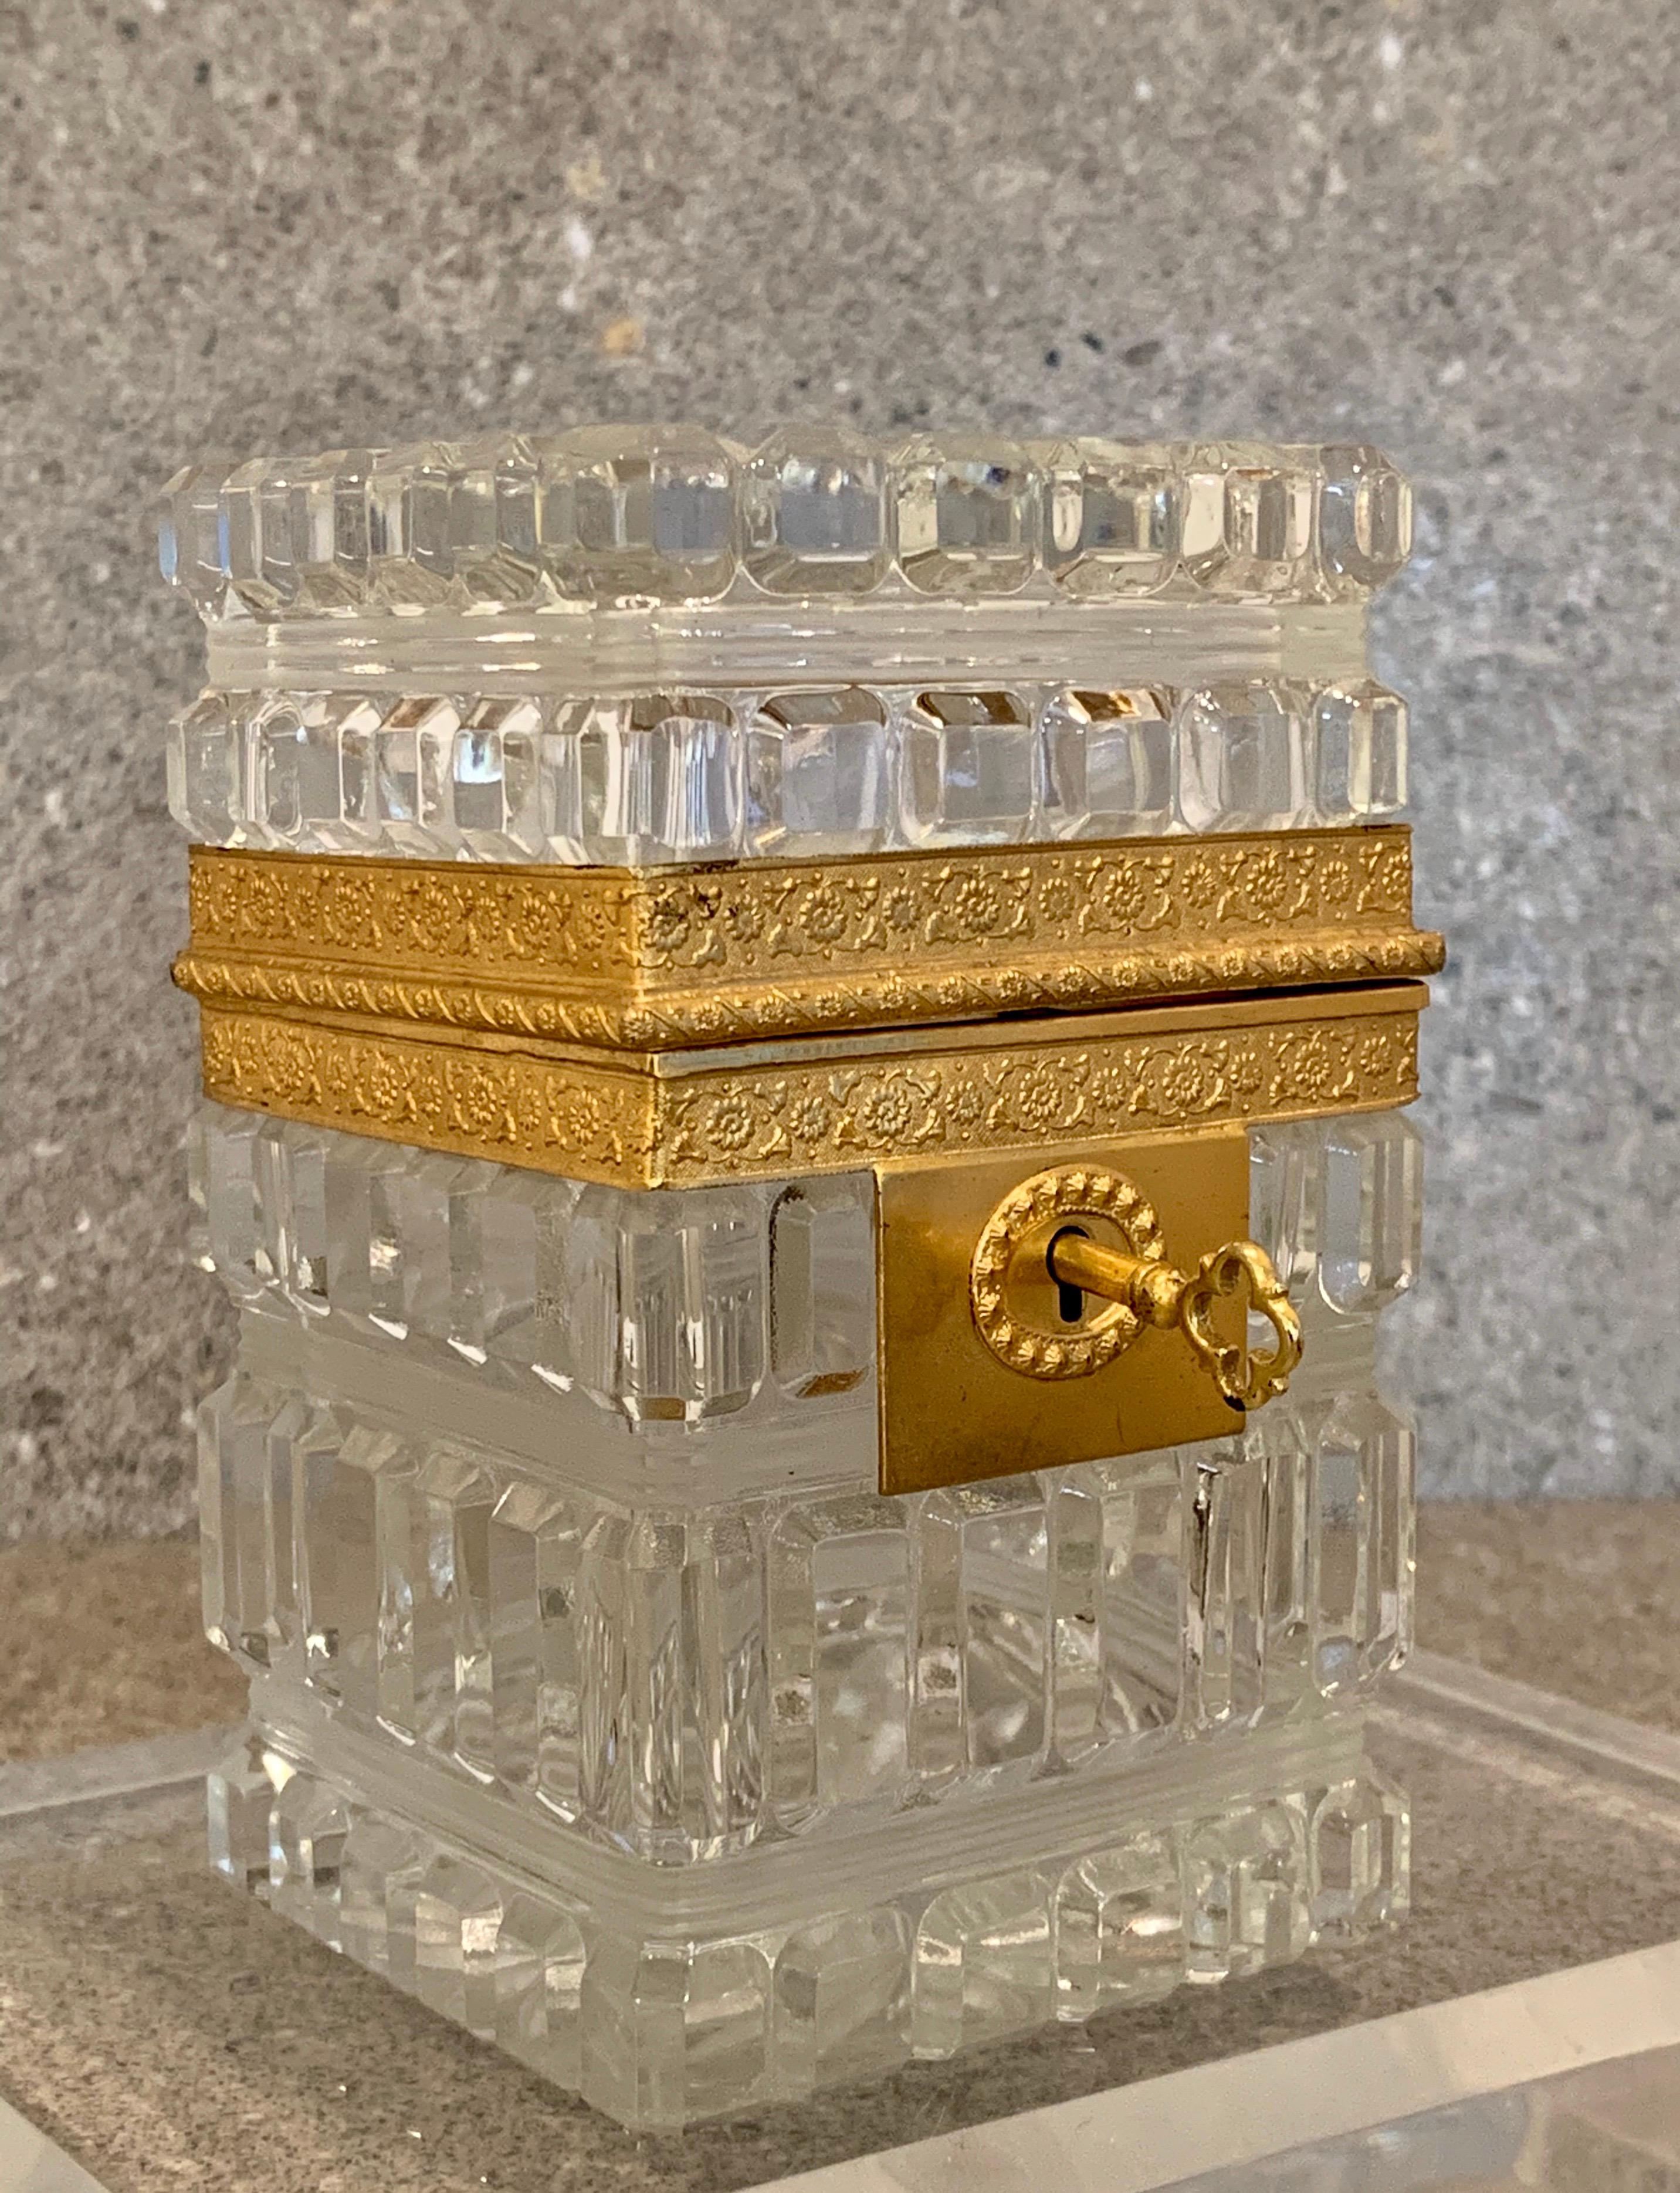 Hergestellt aus schwerem geschliffenem Baccarat-Kristallglas
mit einem Starburst-Muster auf der Oberseite
Eine frühe prächtige französische Glasschatulle
Diese schöne Schachtel ist verziert
mit hochwertigen Ormolu-Beschlägen
Der Zustand ist